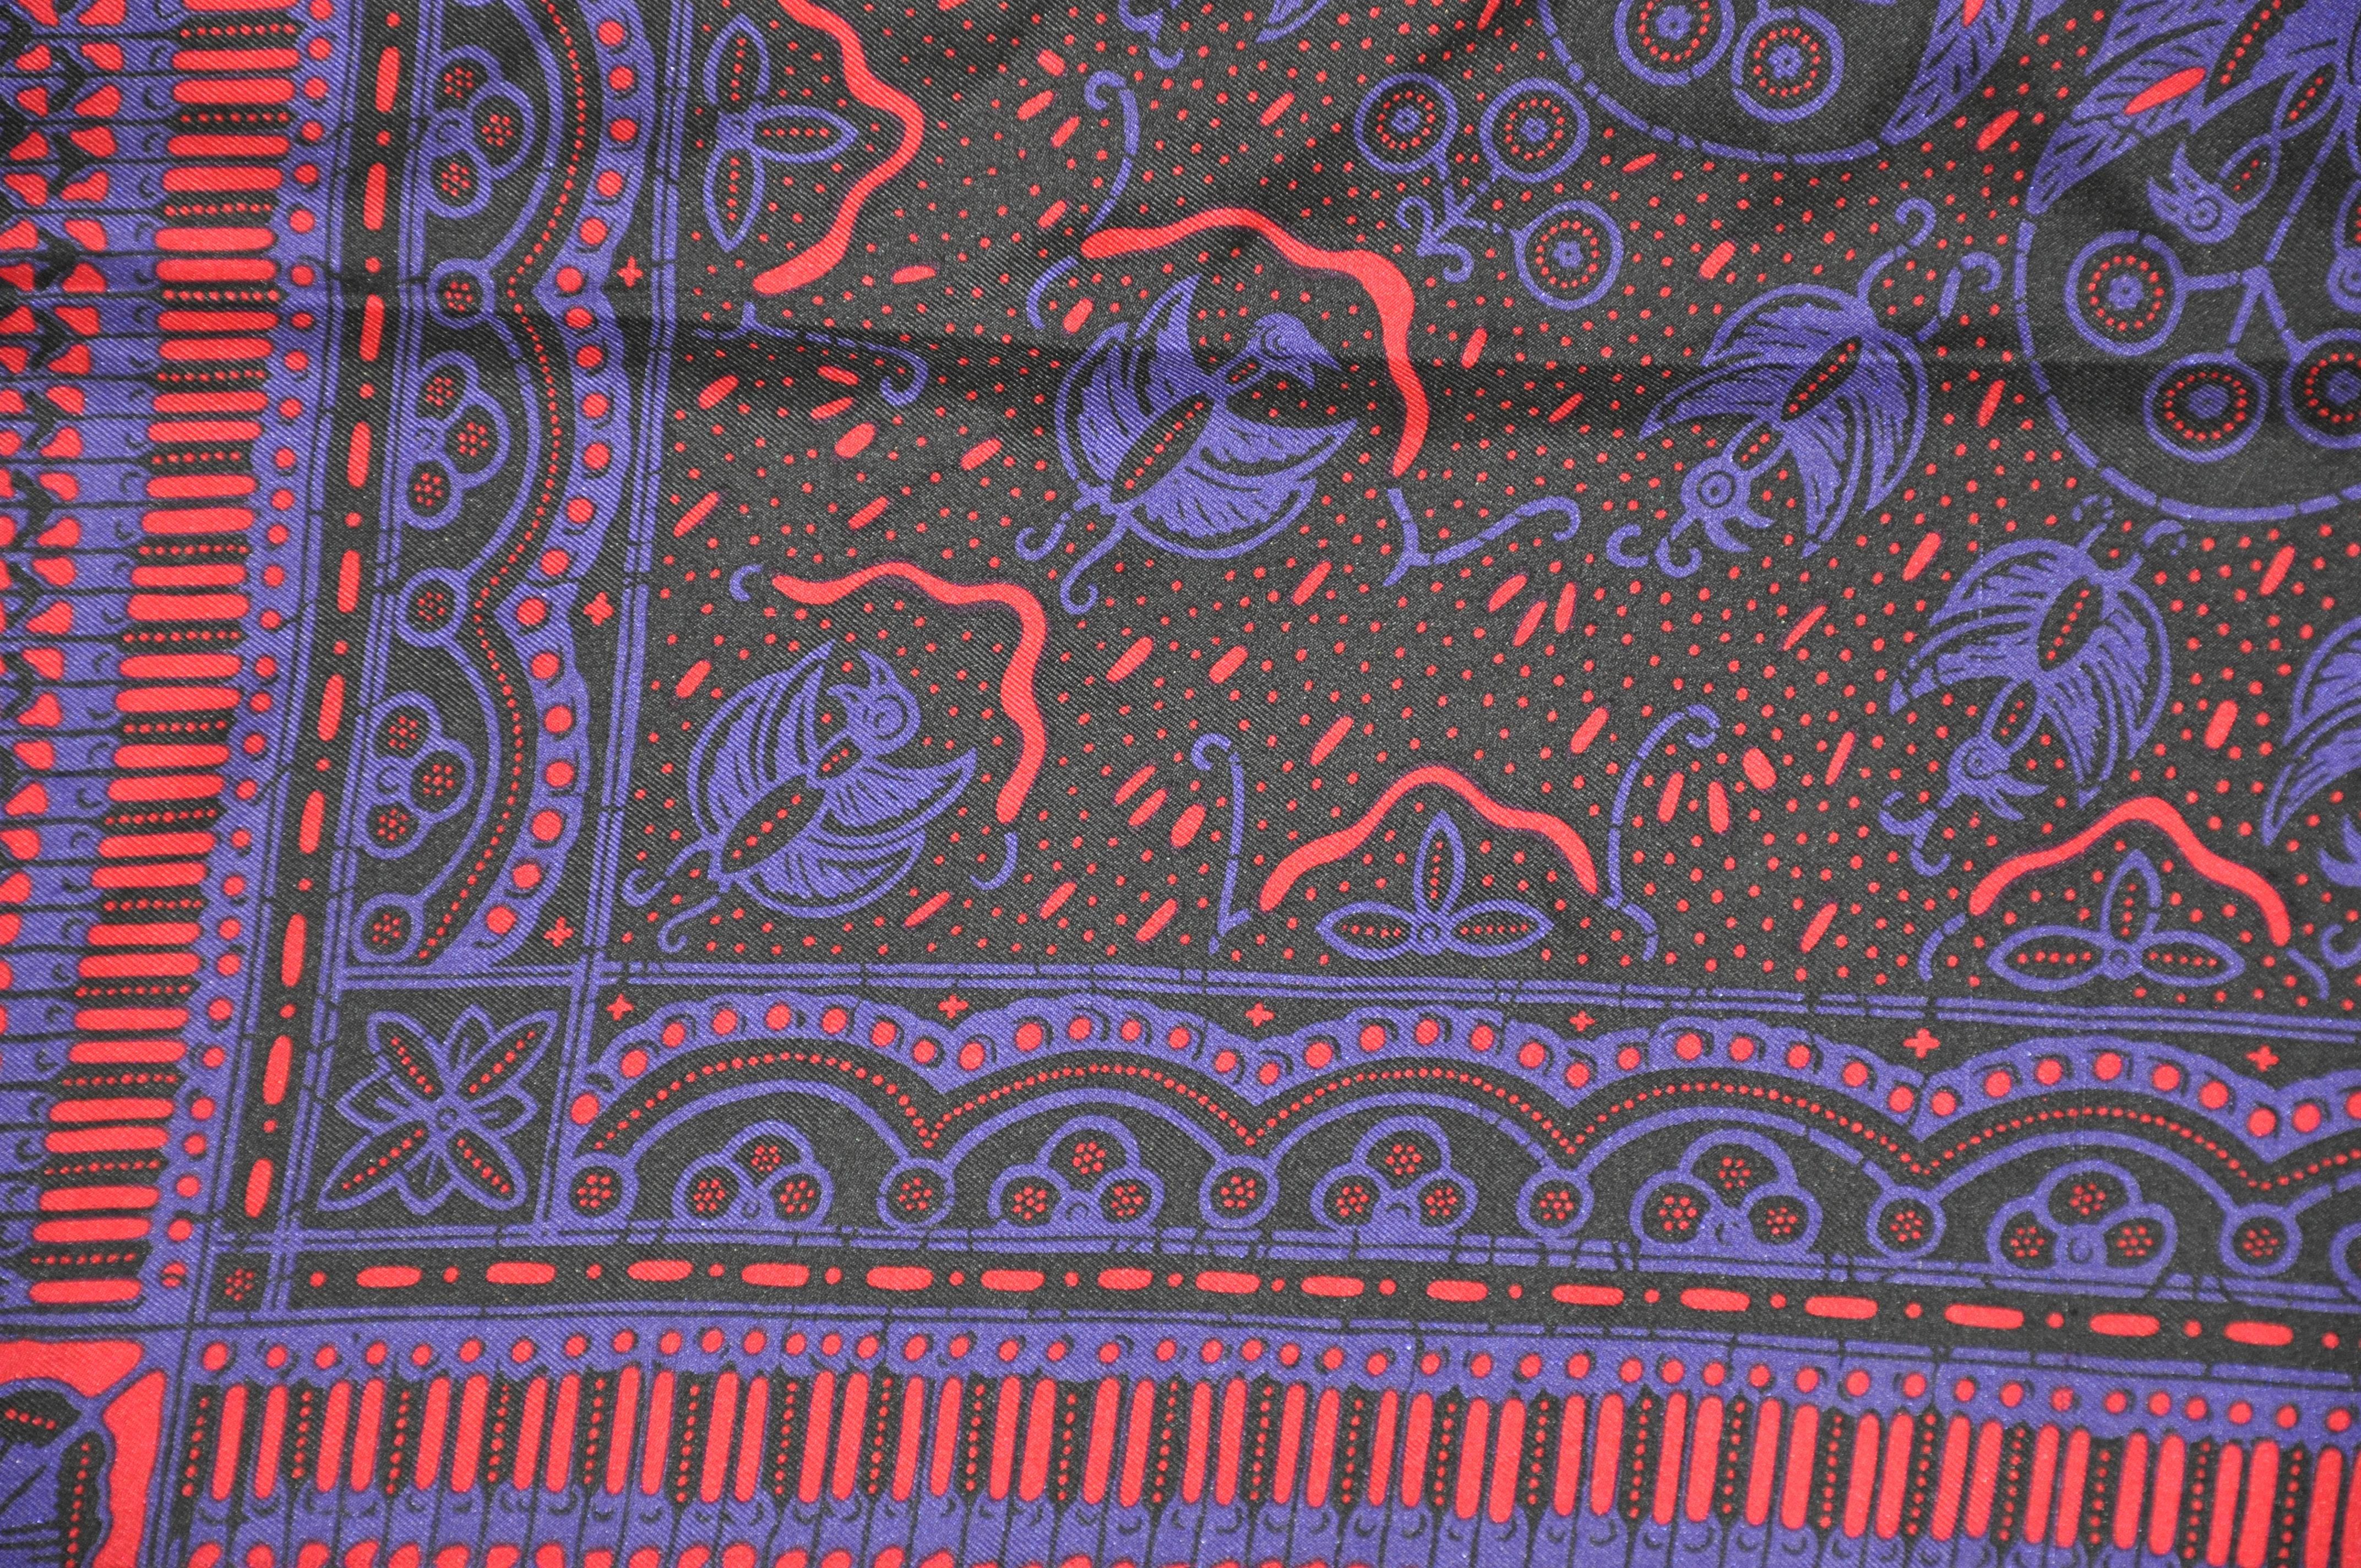      Merveilleusement élégant Perry Ellis fuchsia profond et violet multi-motifs entouré de bordures noires. L'écharpe mesure 30 pouces sur 31 pouces. Fabriquées en Italie.